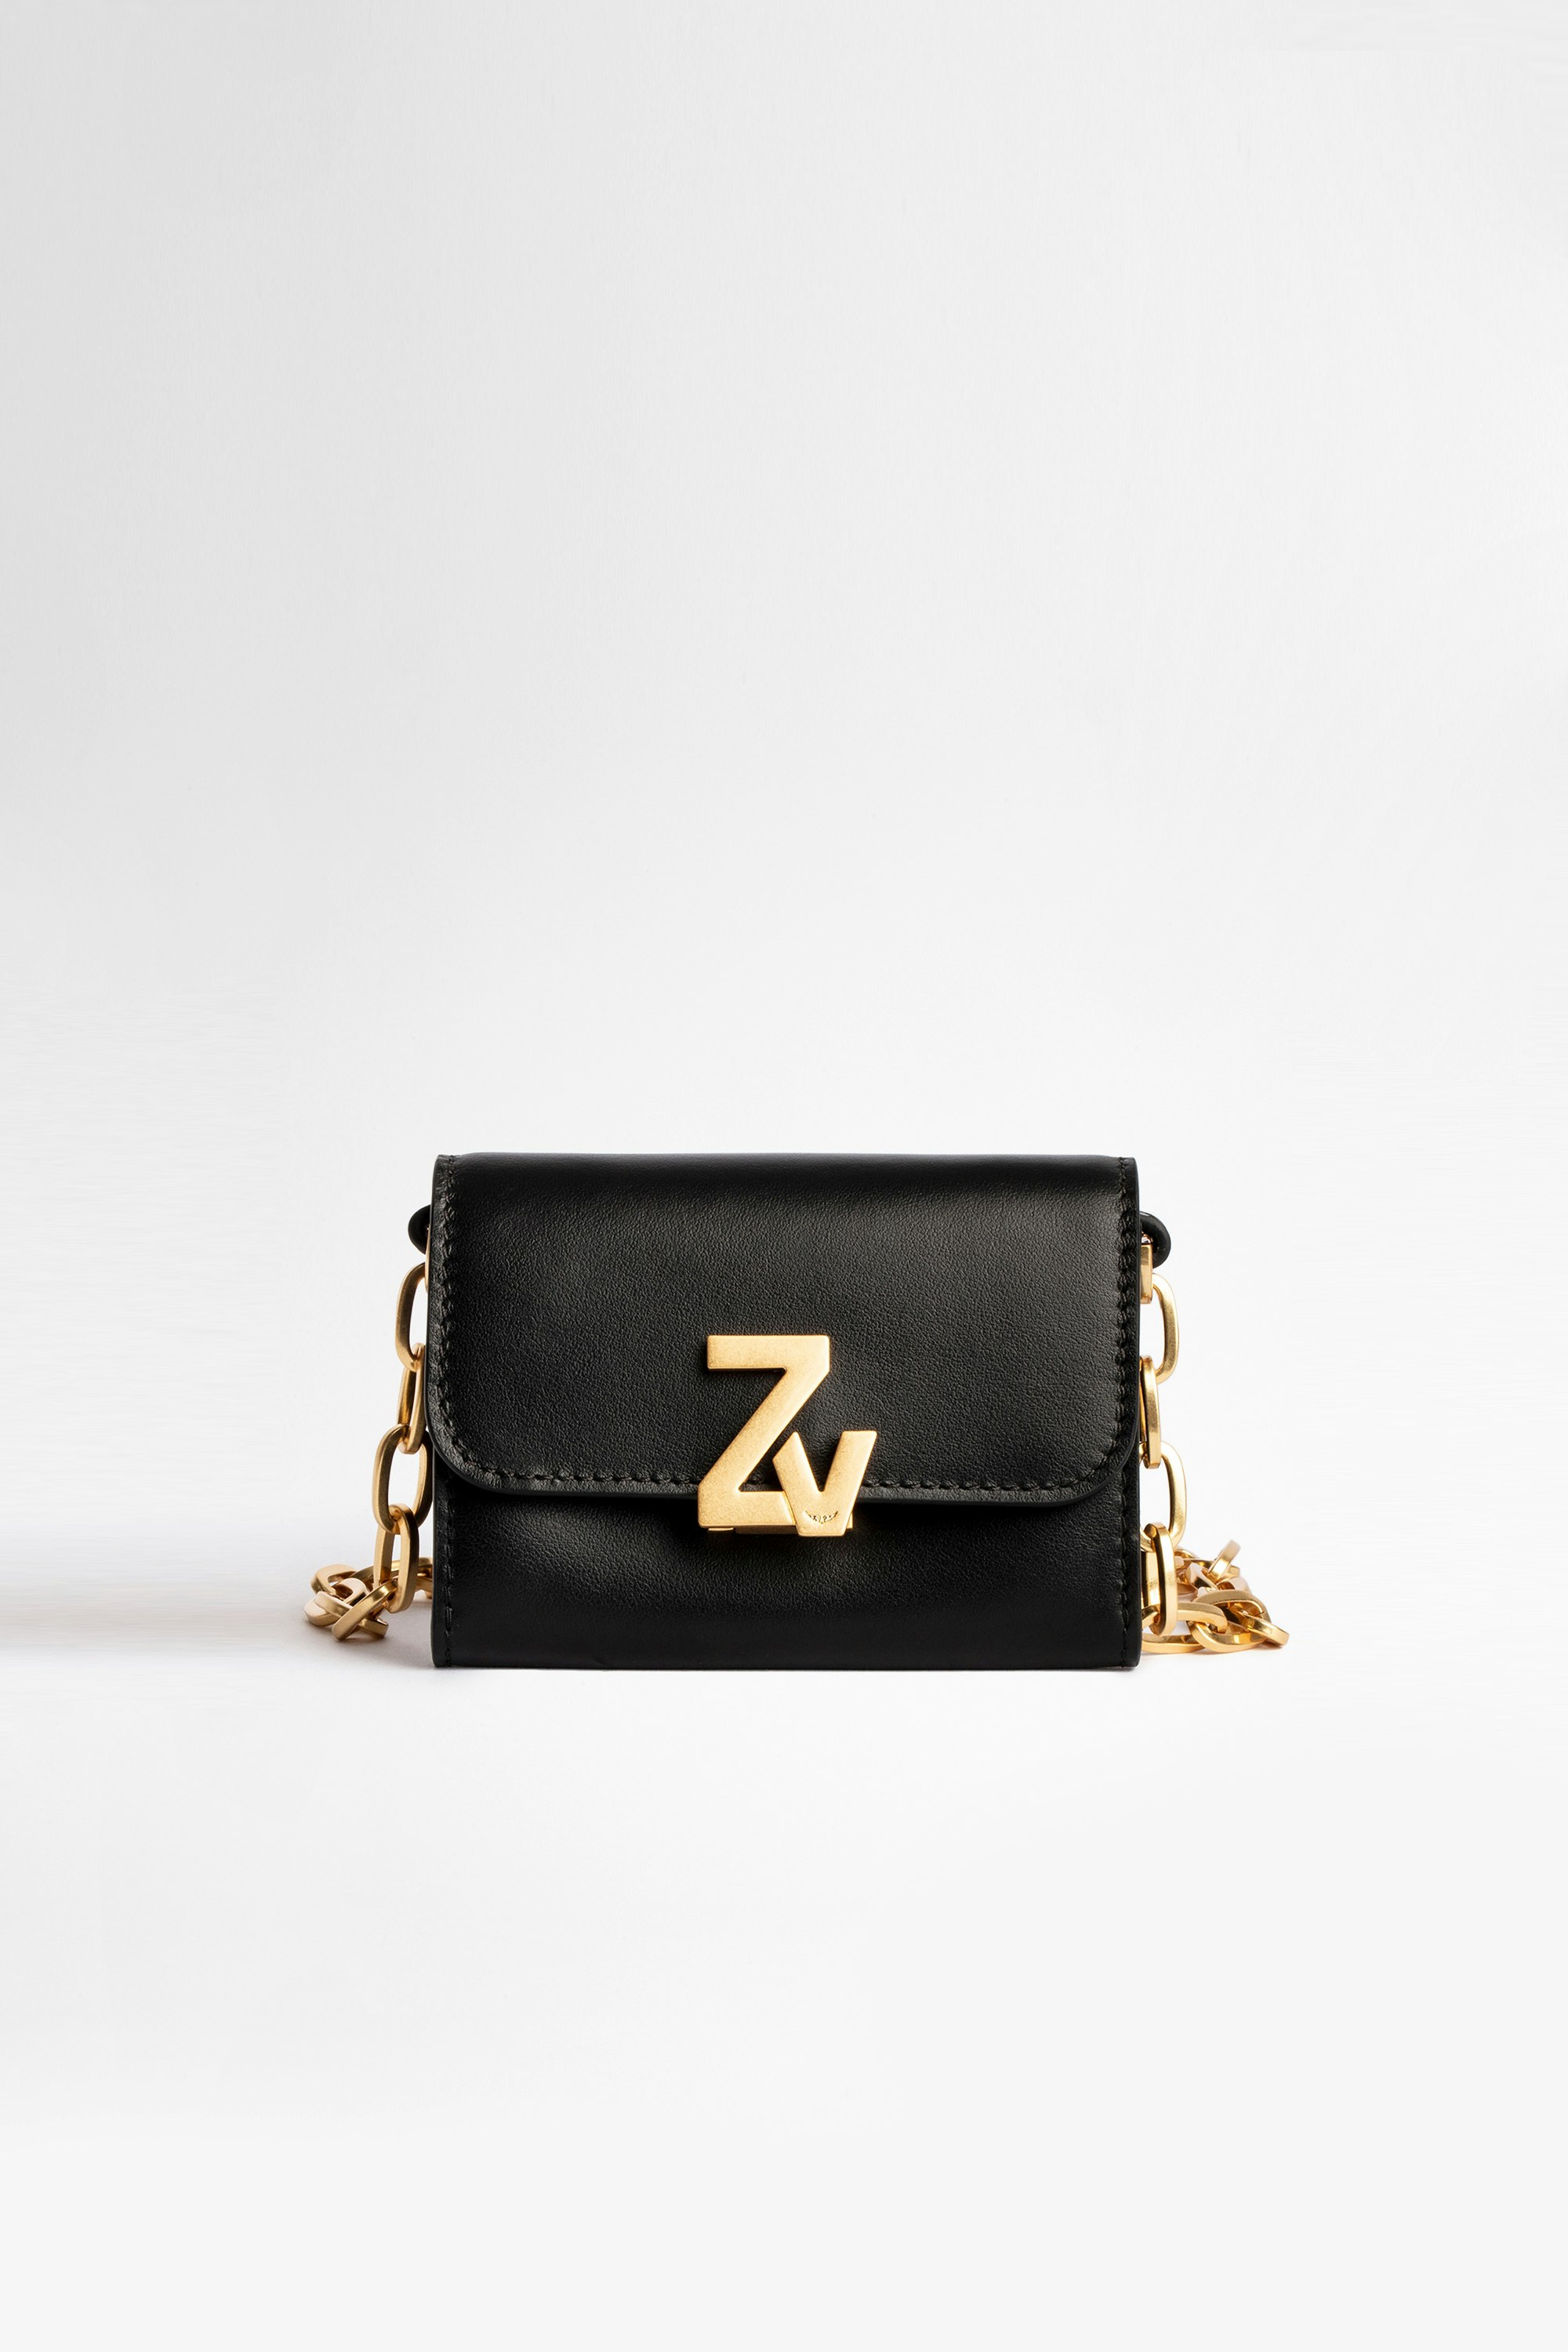 Damentasche Wallet ZV Initiale Le Tiny Unchained Damen-Brieftasche aus schwarzem Leder mit ZV-Initiale